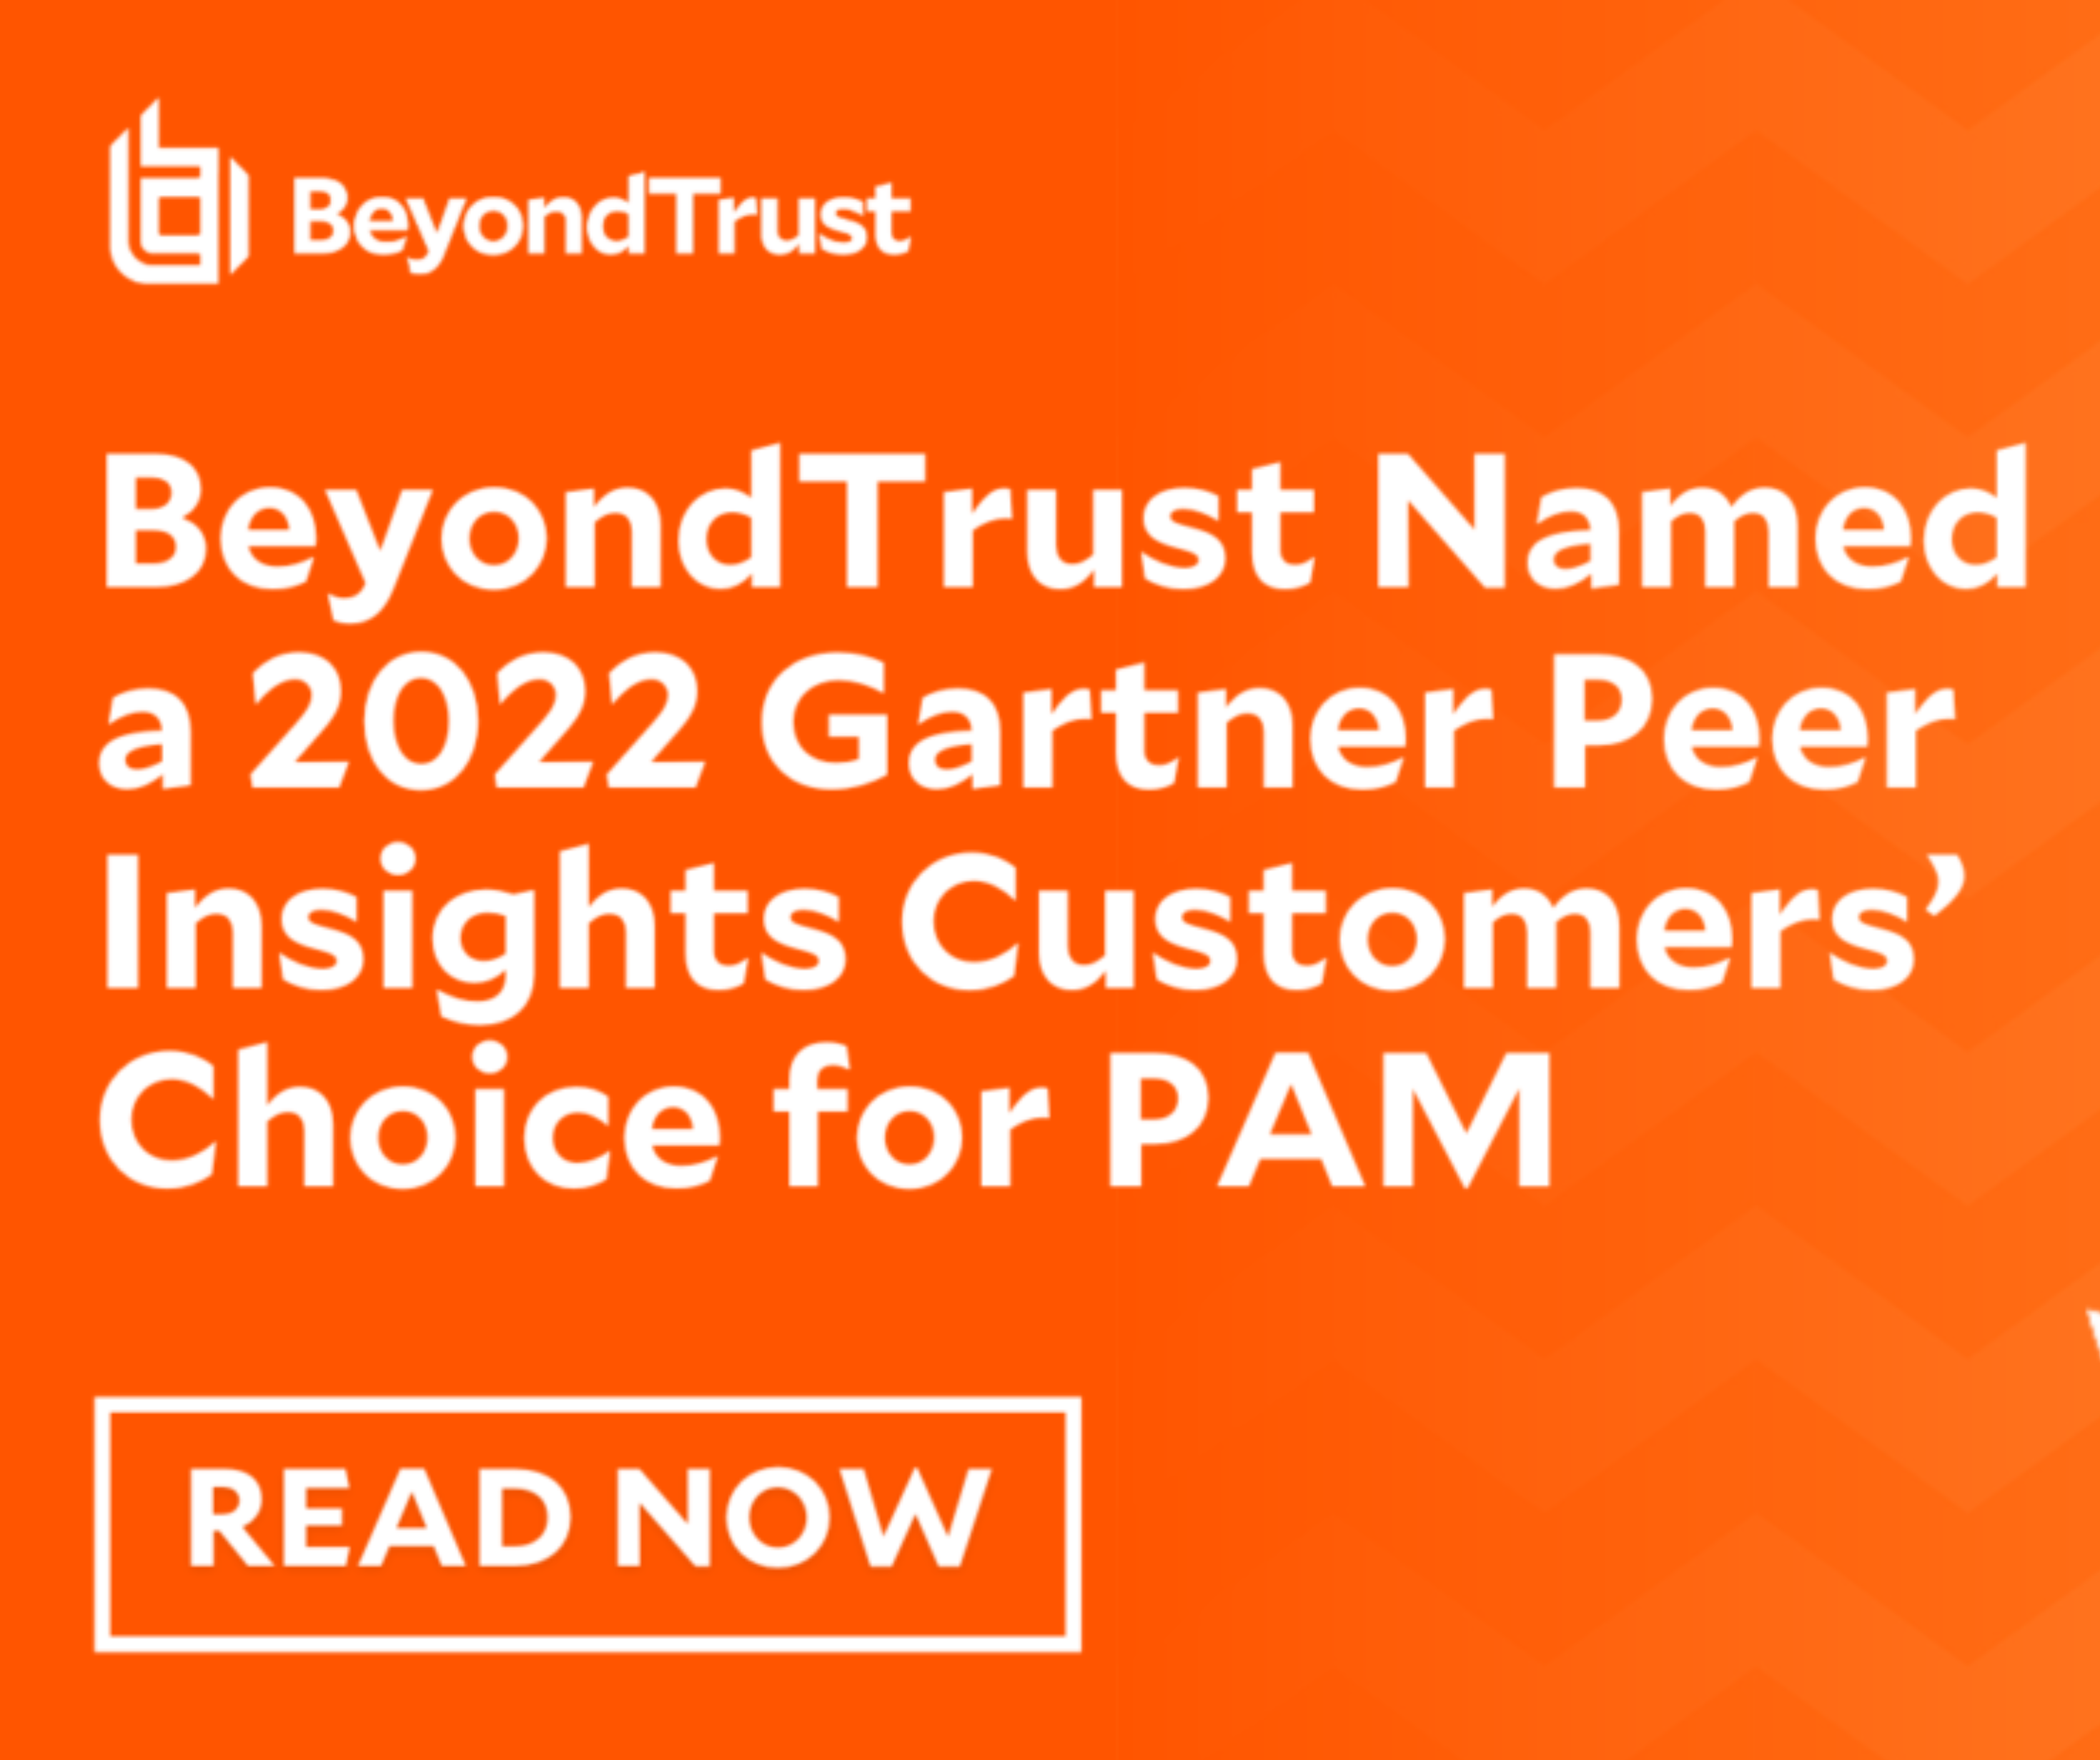 BeyondTrust được vinh danh là “Lựa chọn hàng đầu của khách hàng” về giải pháp Quản lý truy cập đặc quyền (PAM) tại Gartner Peer Insights 2022